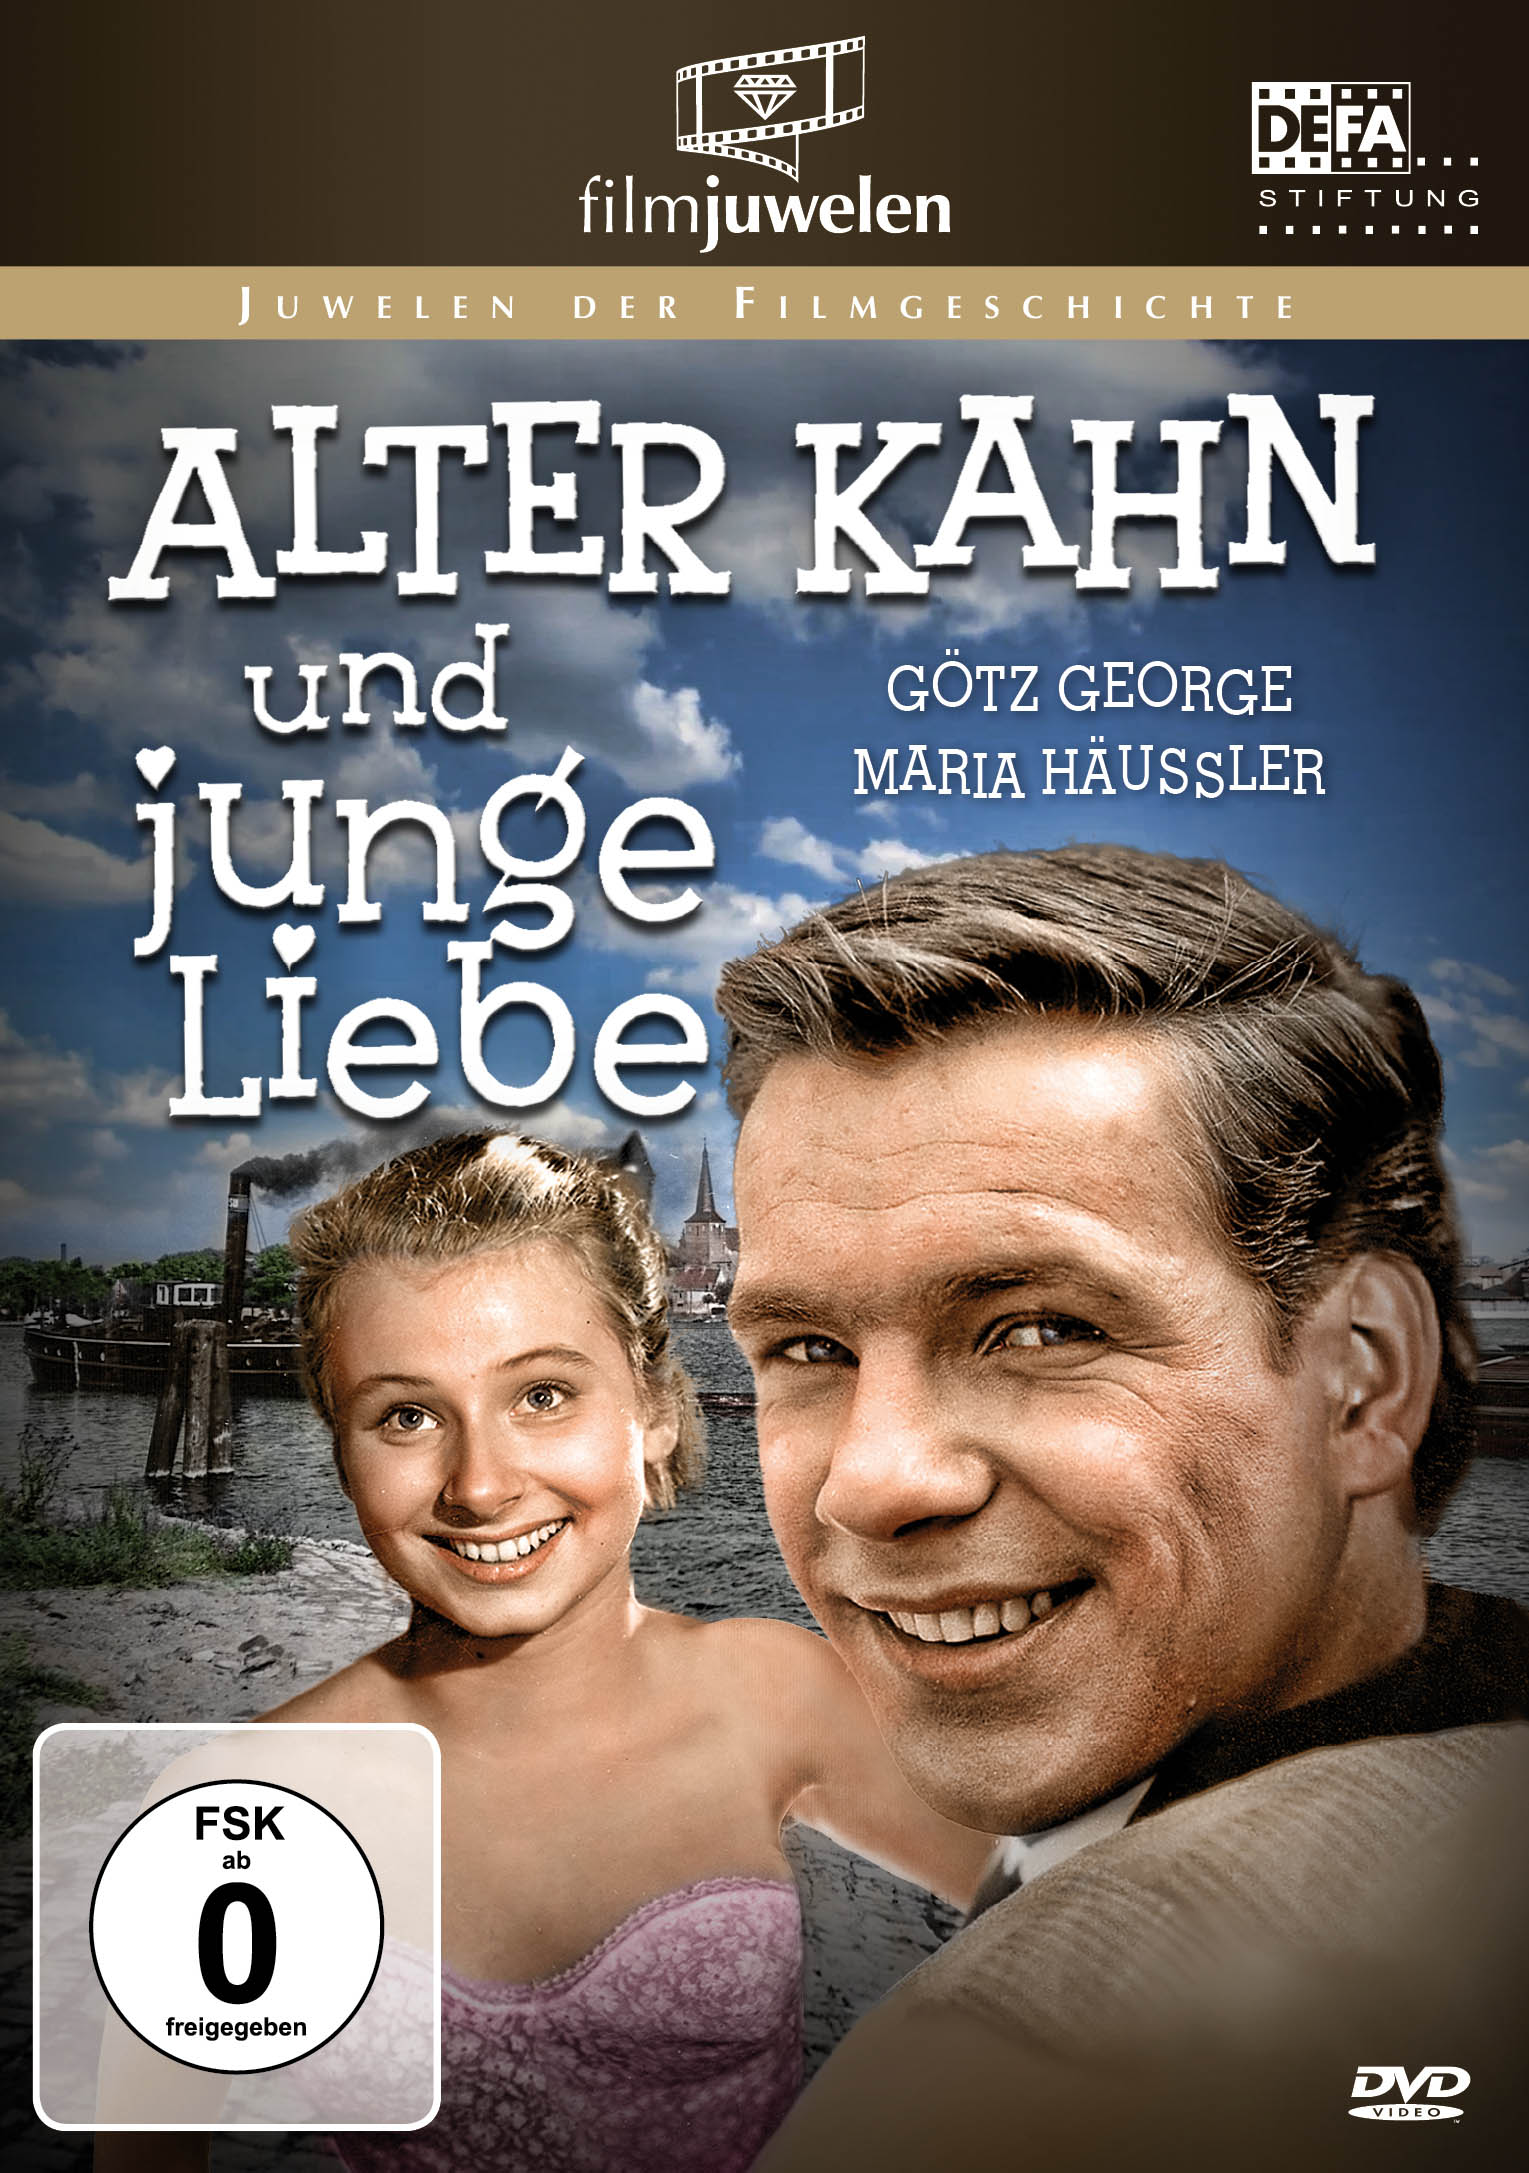 junge und (Goetz Alter DVD Kahn Liebe